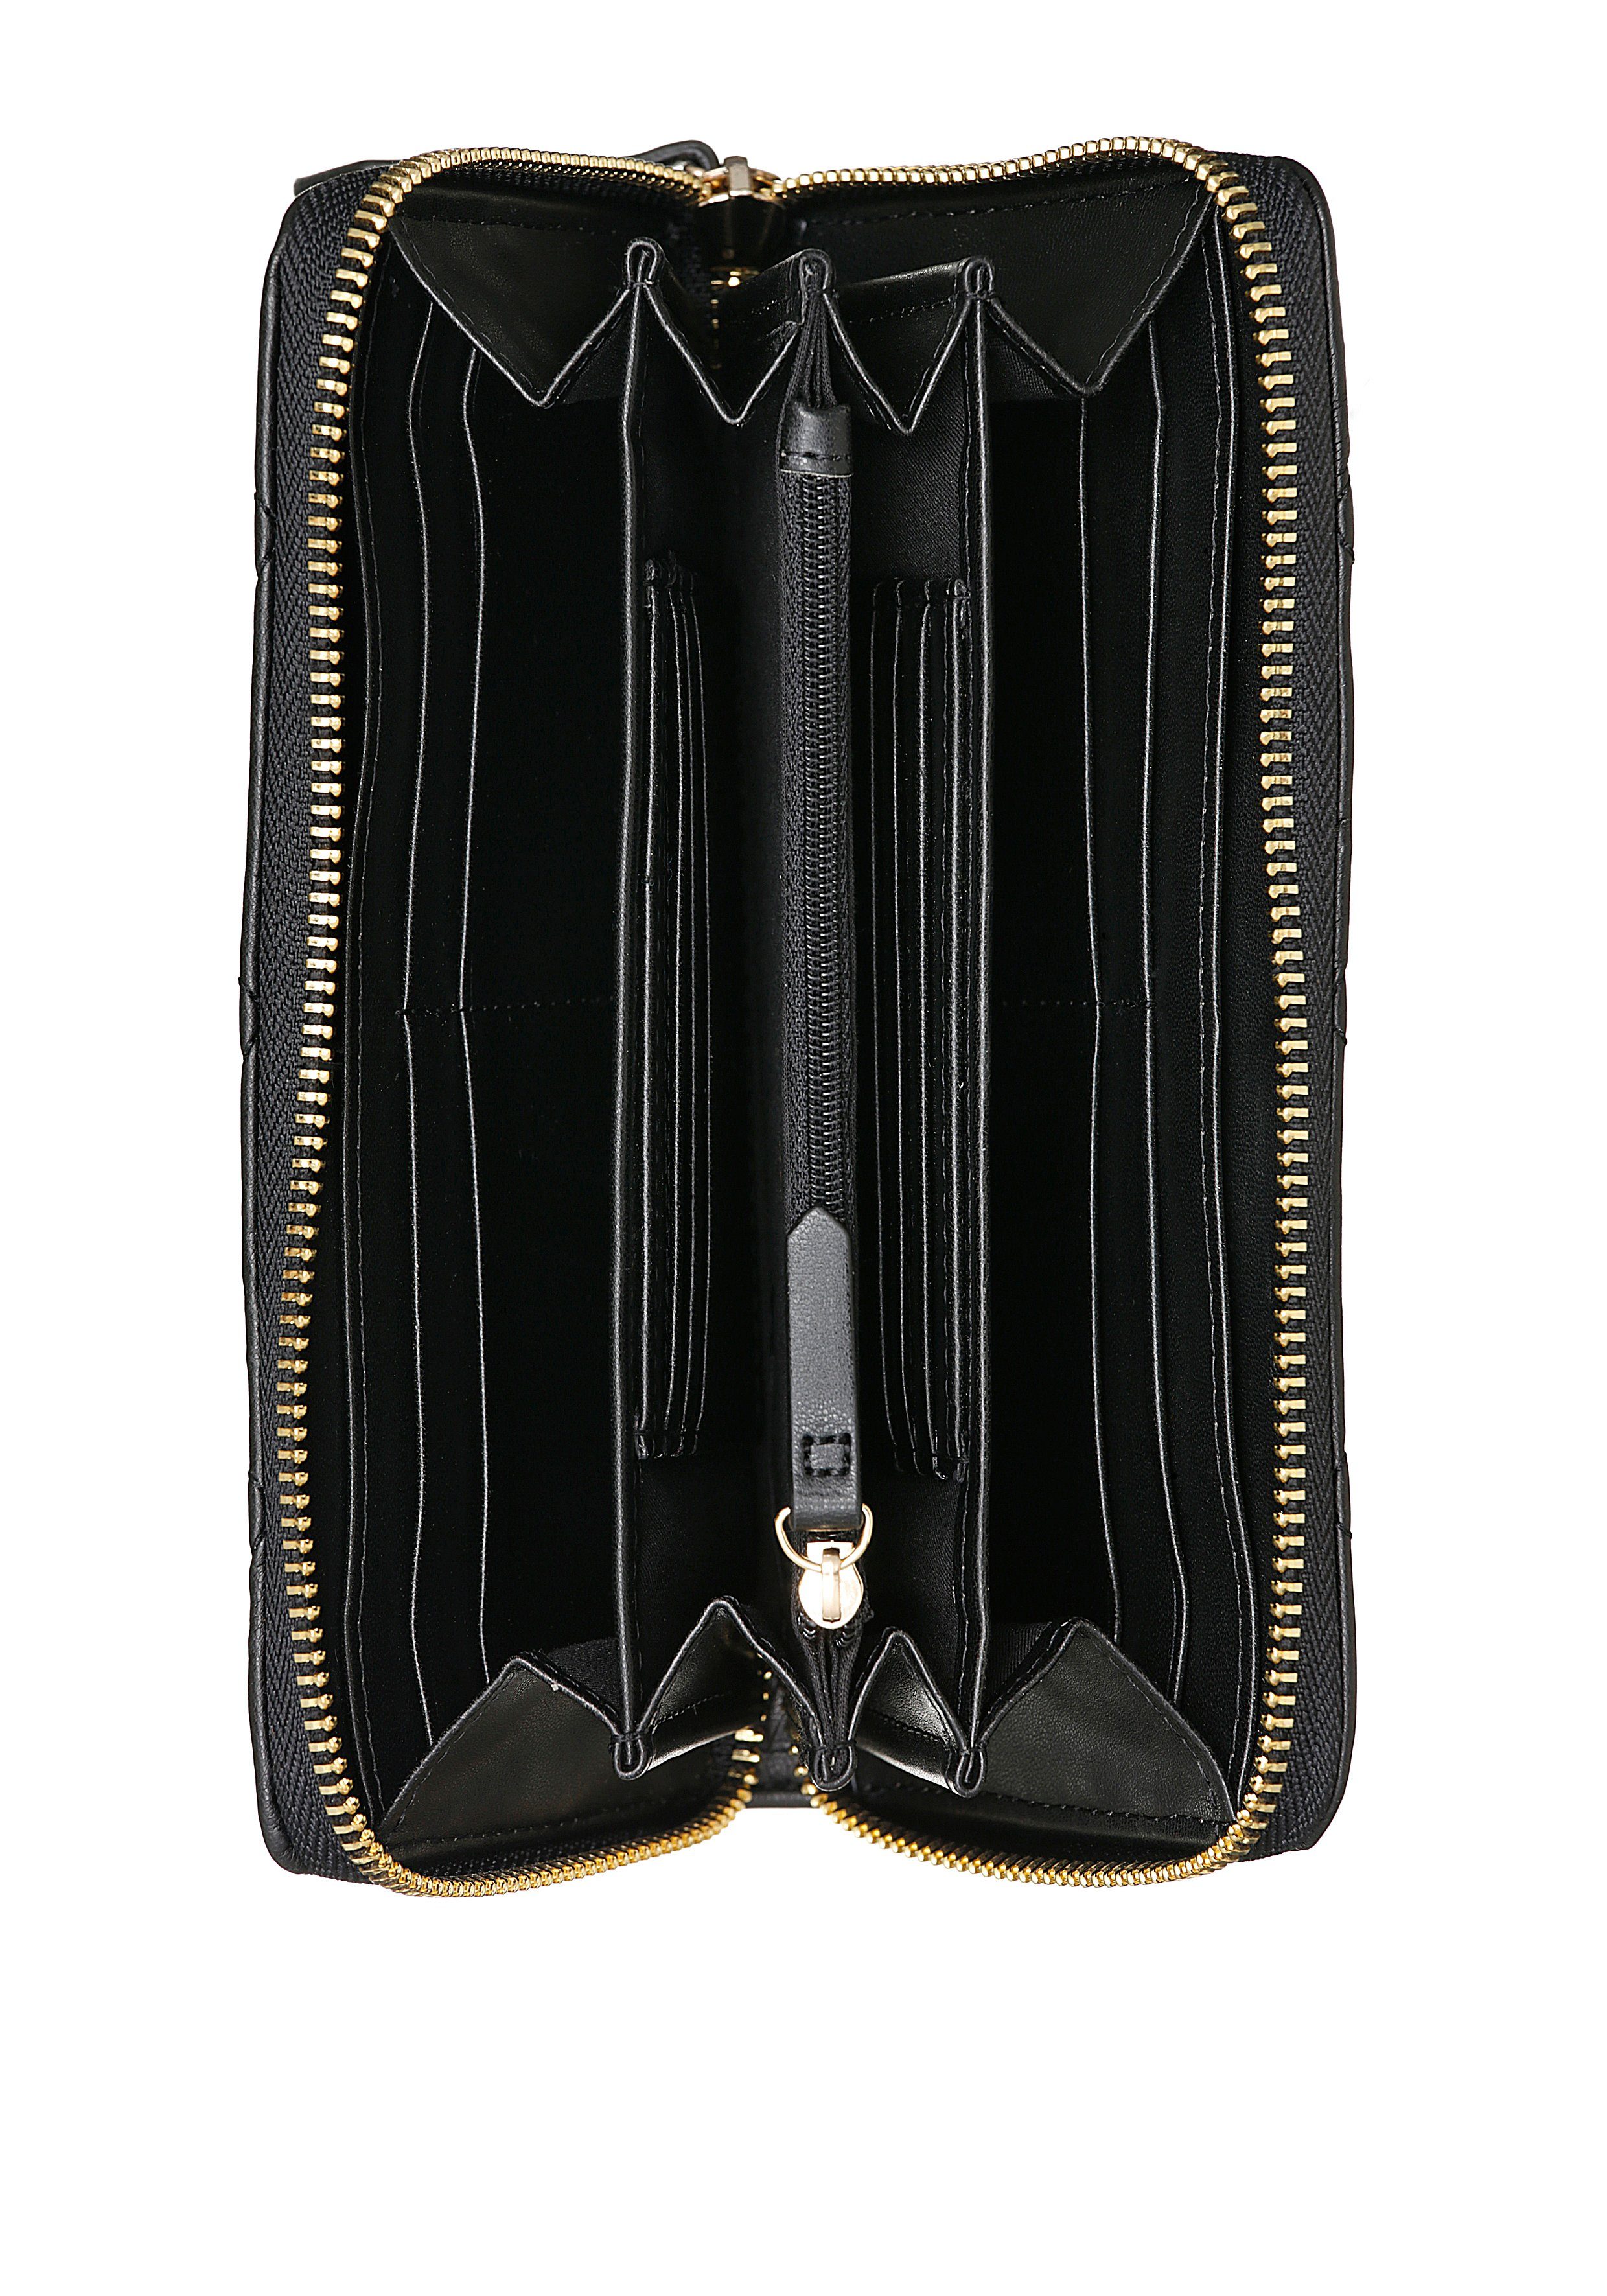 BAGS goldfarbenen Geldbörse trenidger VALENTINO mit schwarz Steppung Details und Ocarina,